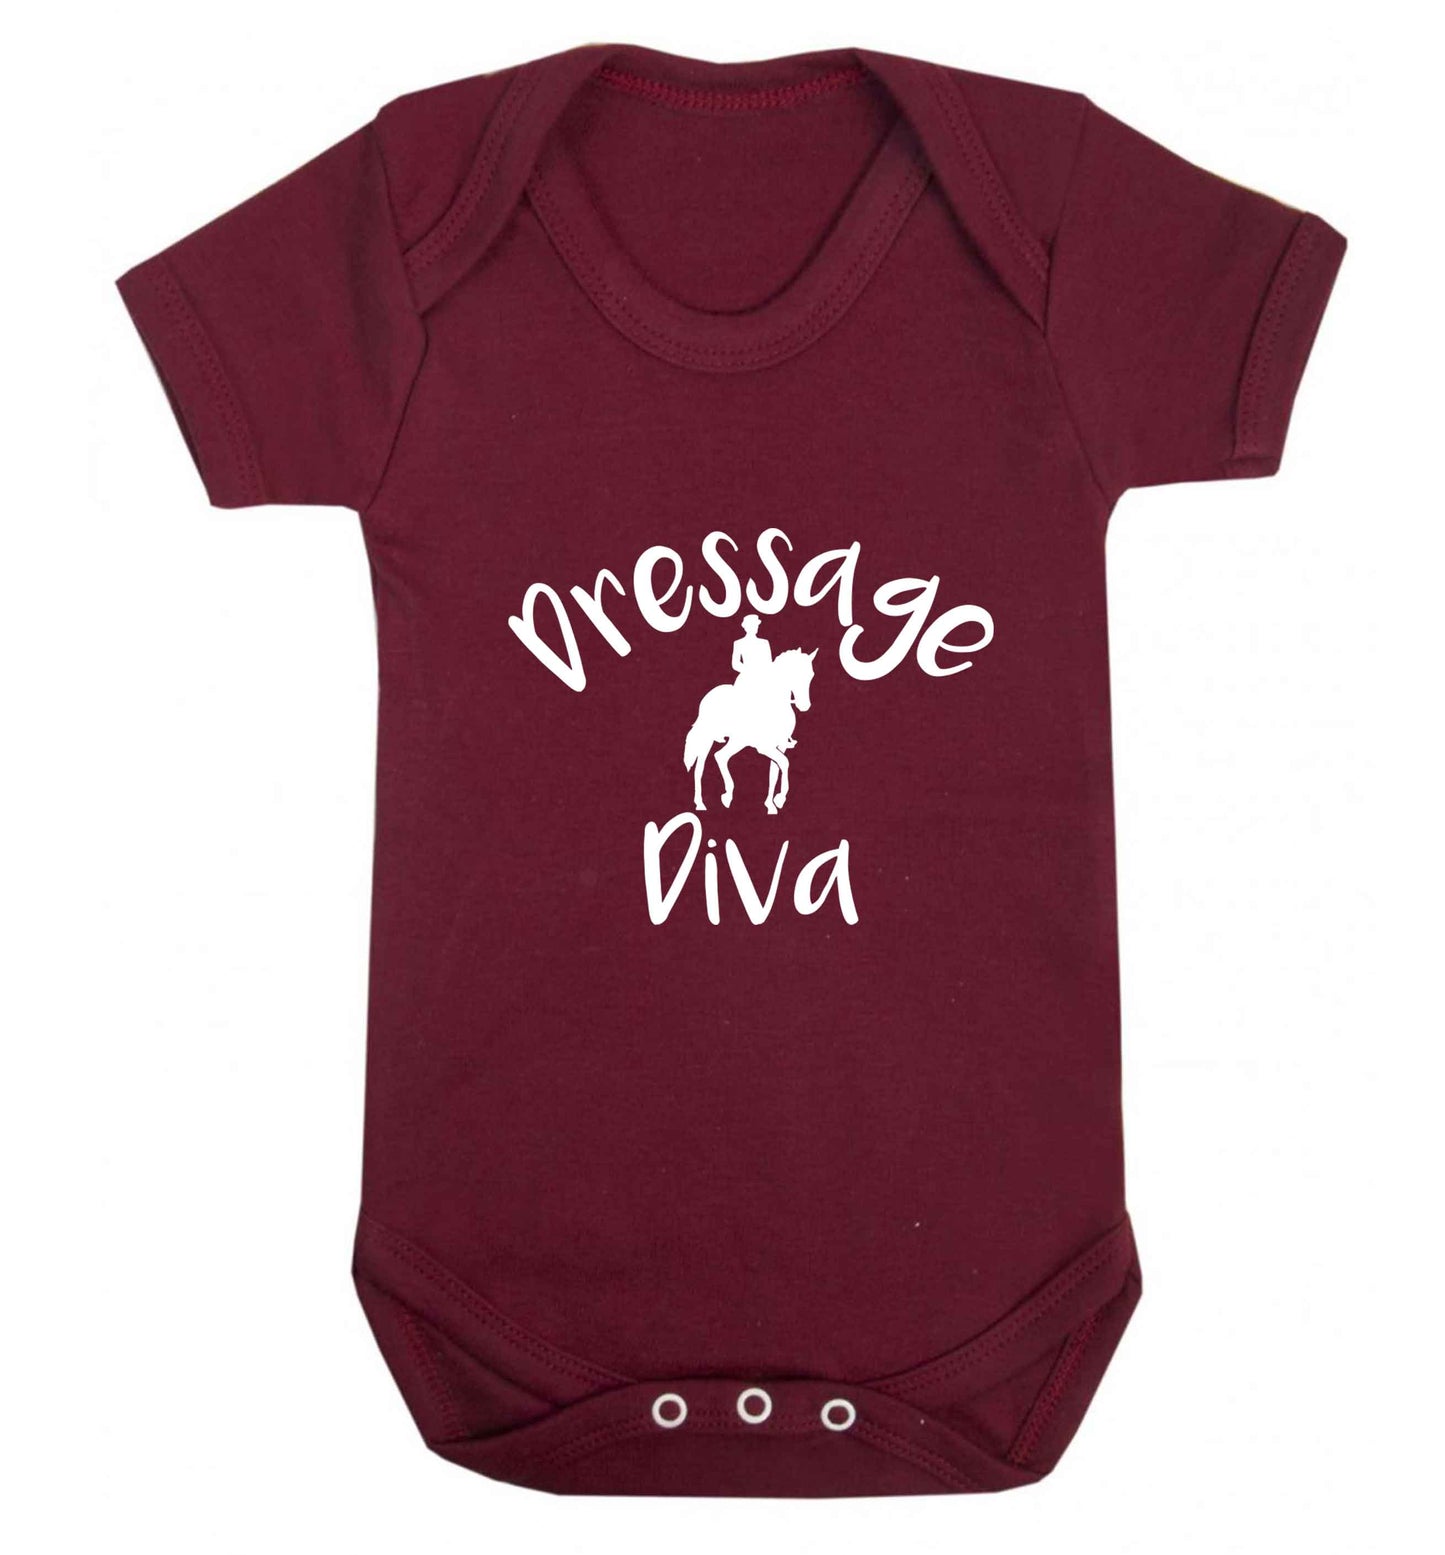 Dressage diva baby vest maroon 18-24 months